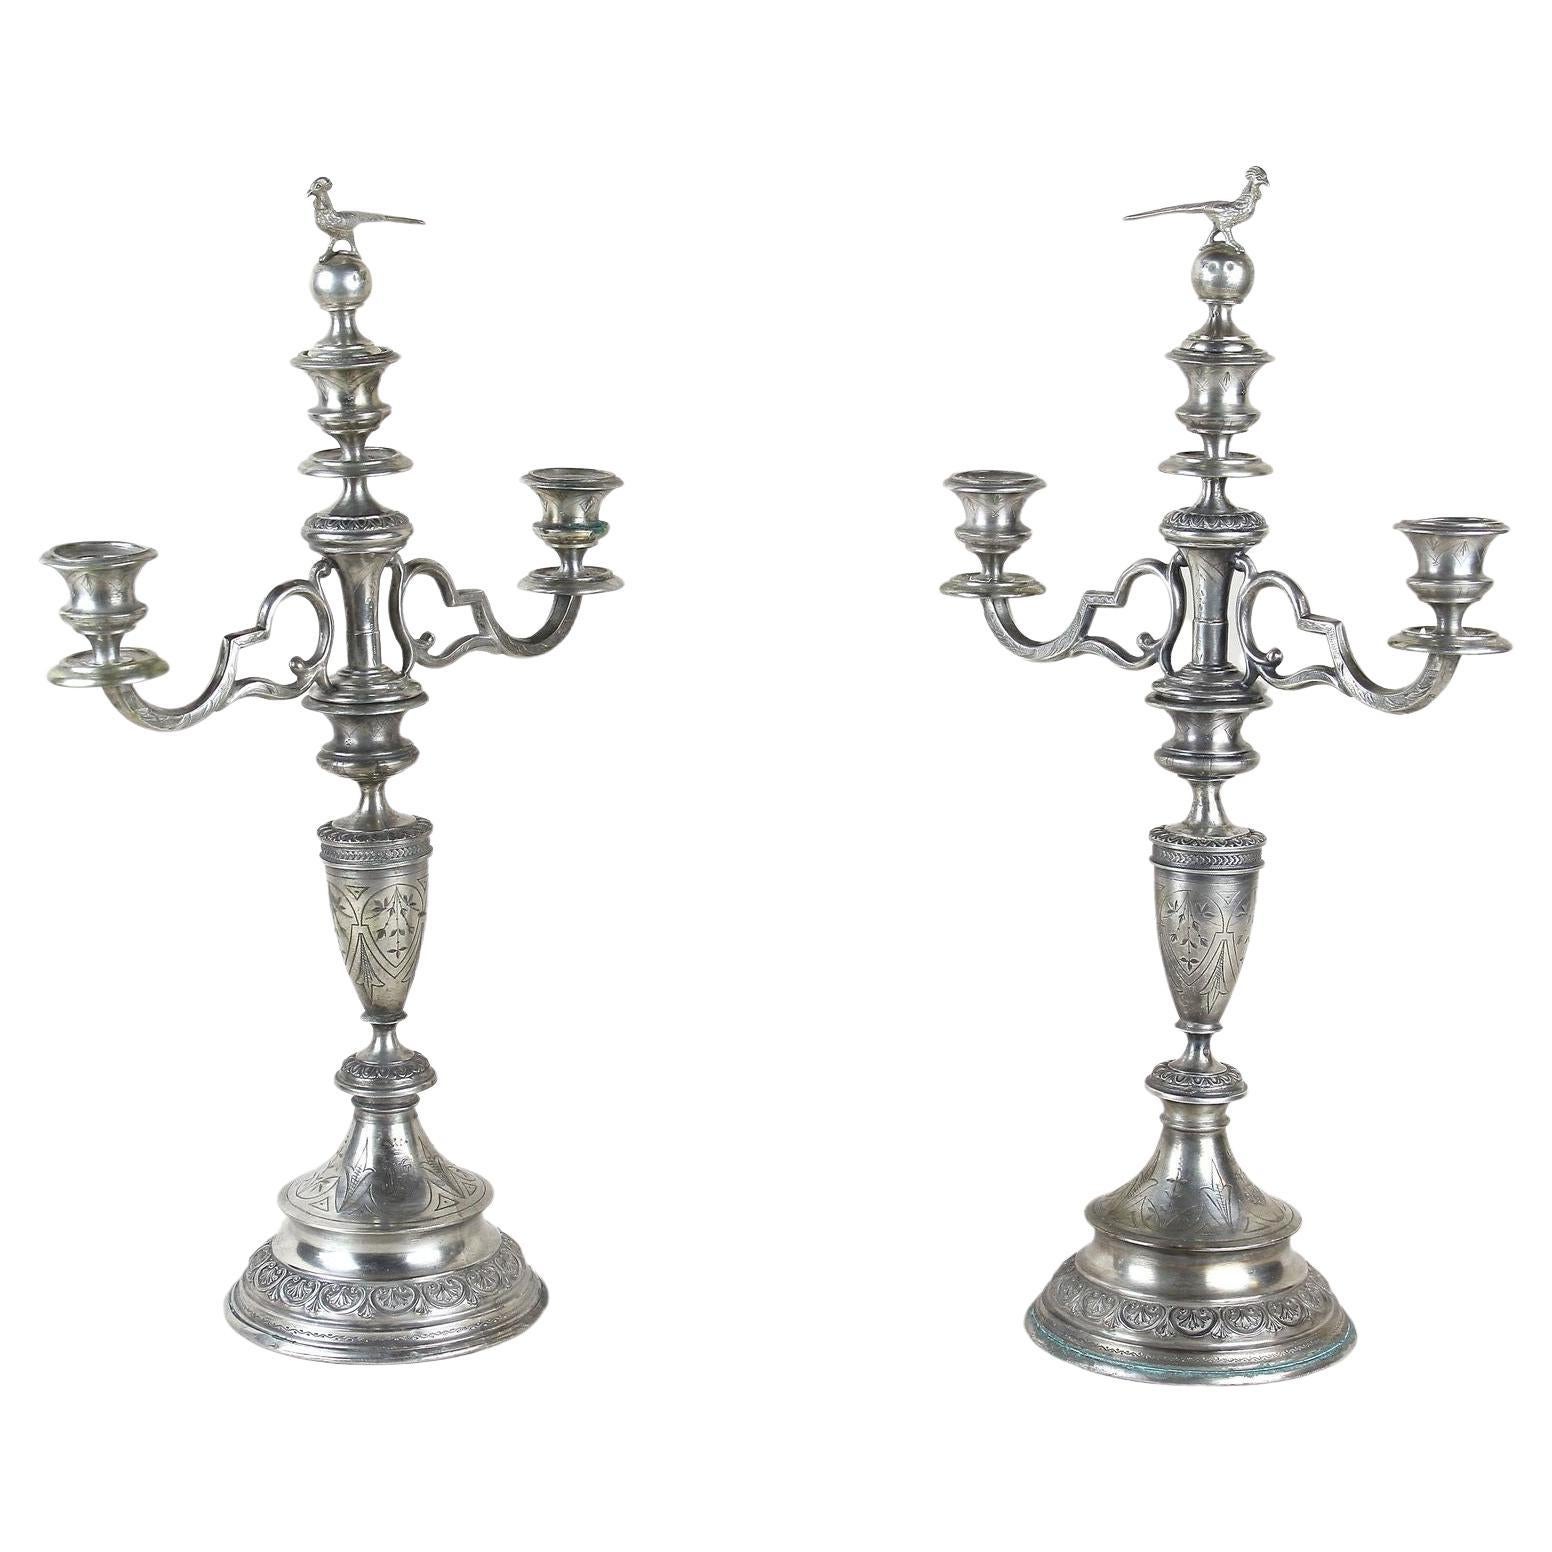 Paire de chandeliers en argent massif du XIXe siècle, Autriche vers 1860